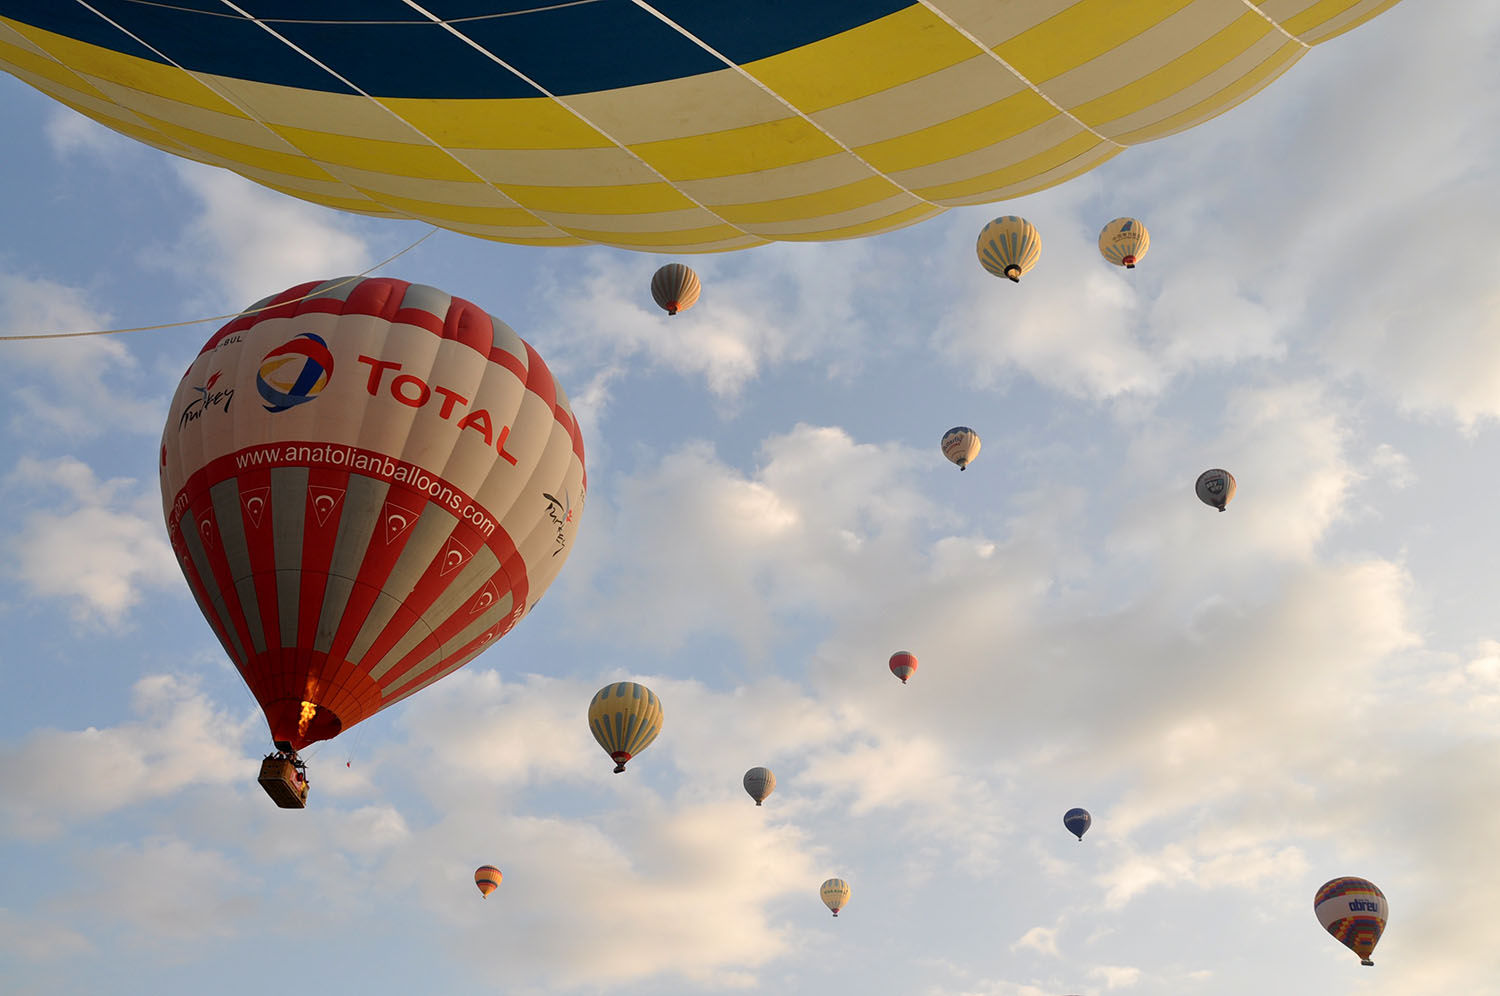 土耳其热气球图片大全-土耳其热气球高清图片下载-觅知网